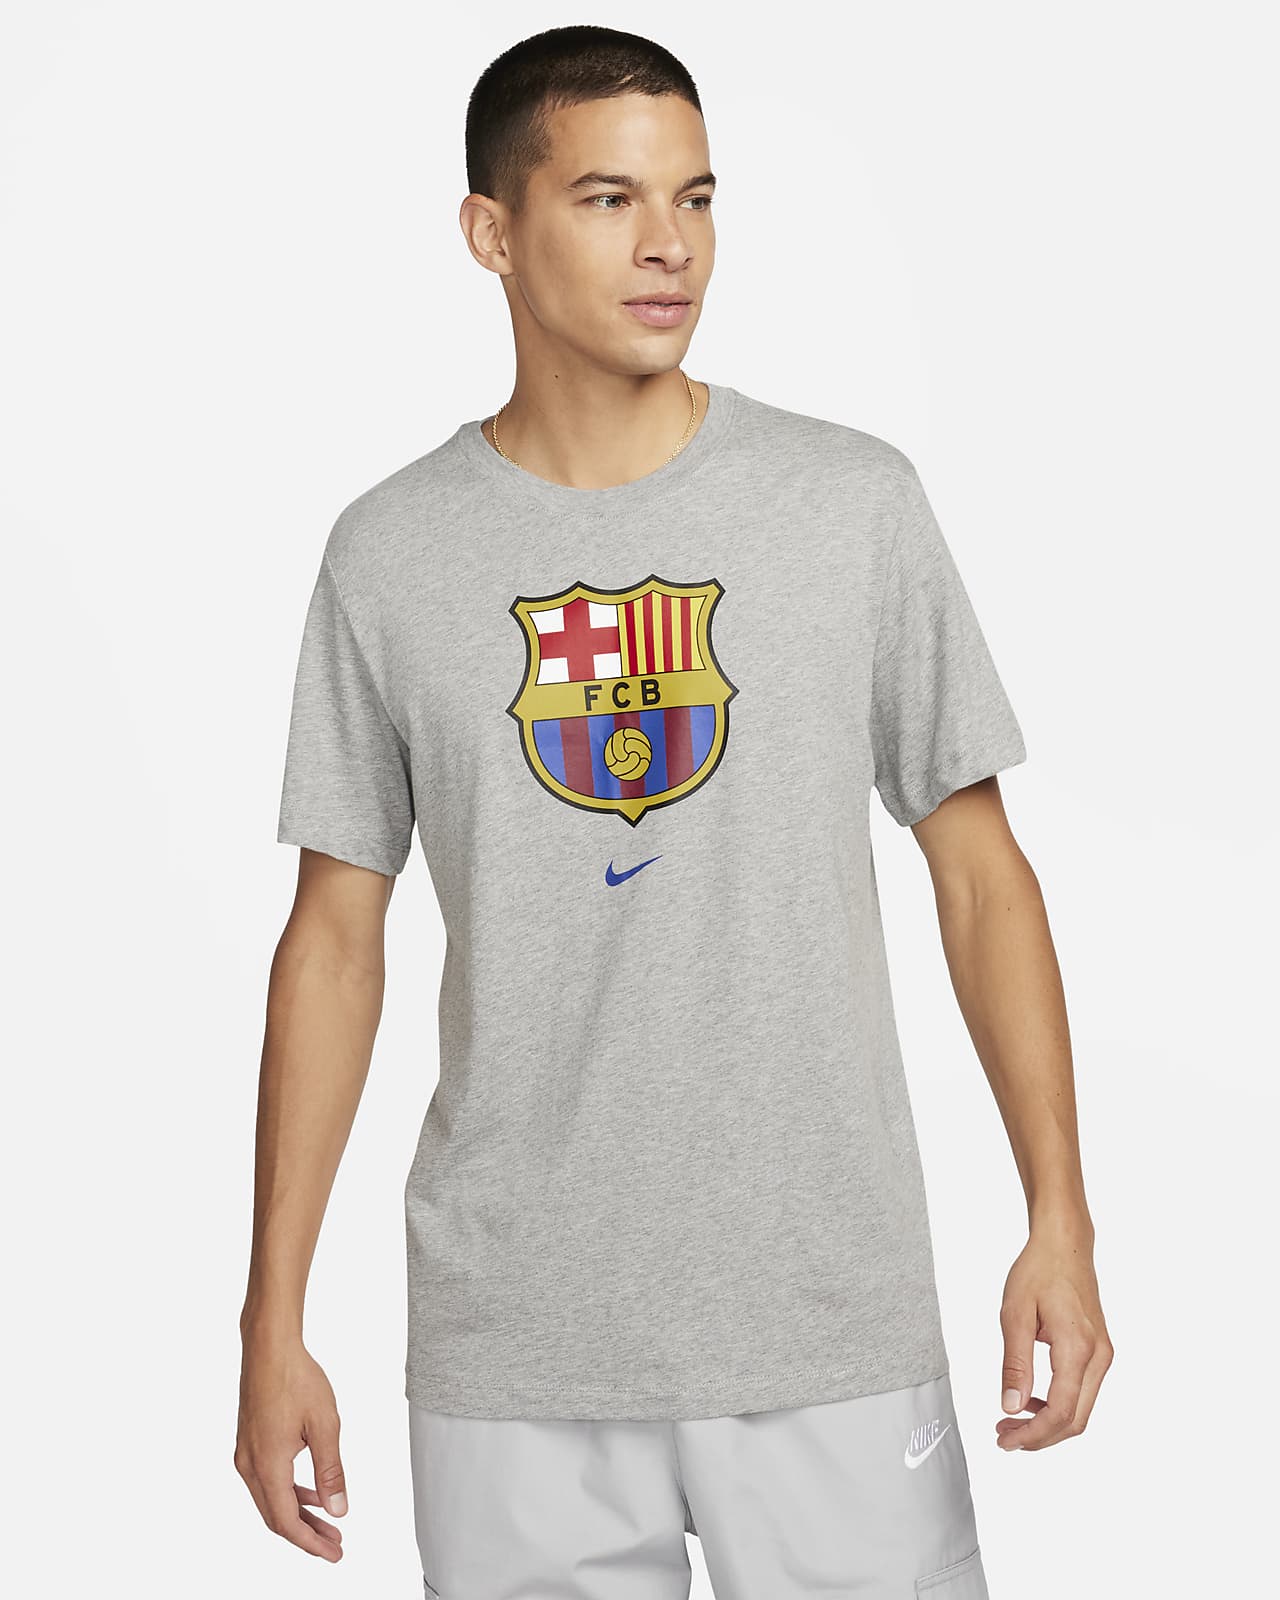 FC Barcelona Crest Men's Soccer T-Shirt